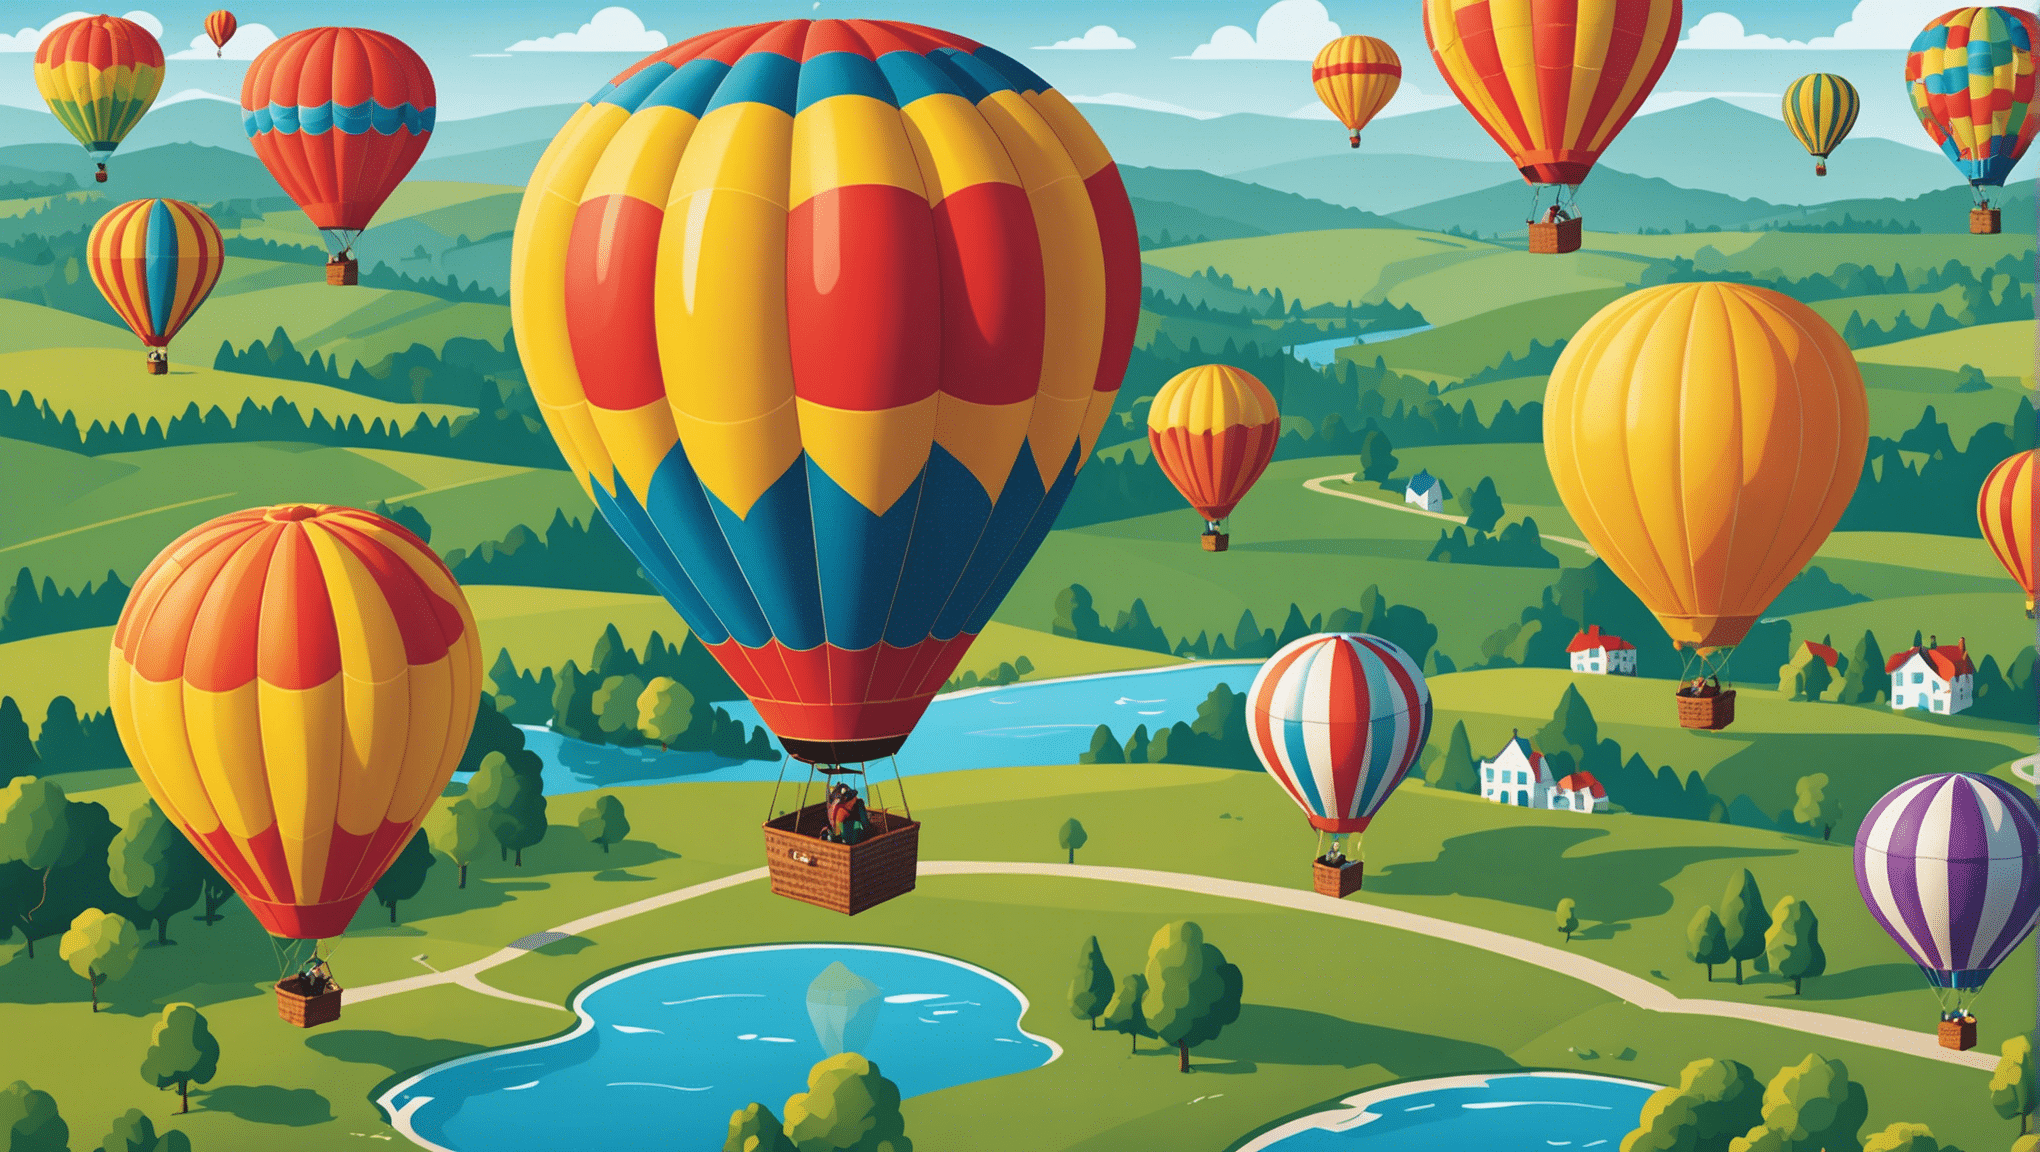 découvrez des expériences mémorables à vivre lors de voyages en montgolfière avec des vues époustouflantes. réservez votre aventure dès maintenant !